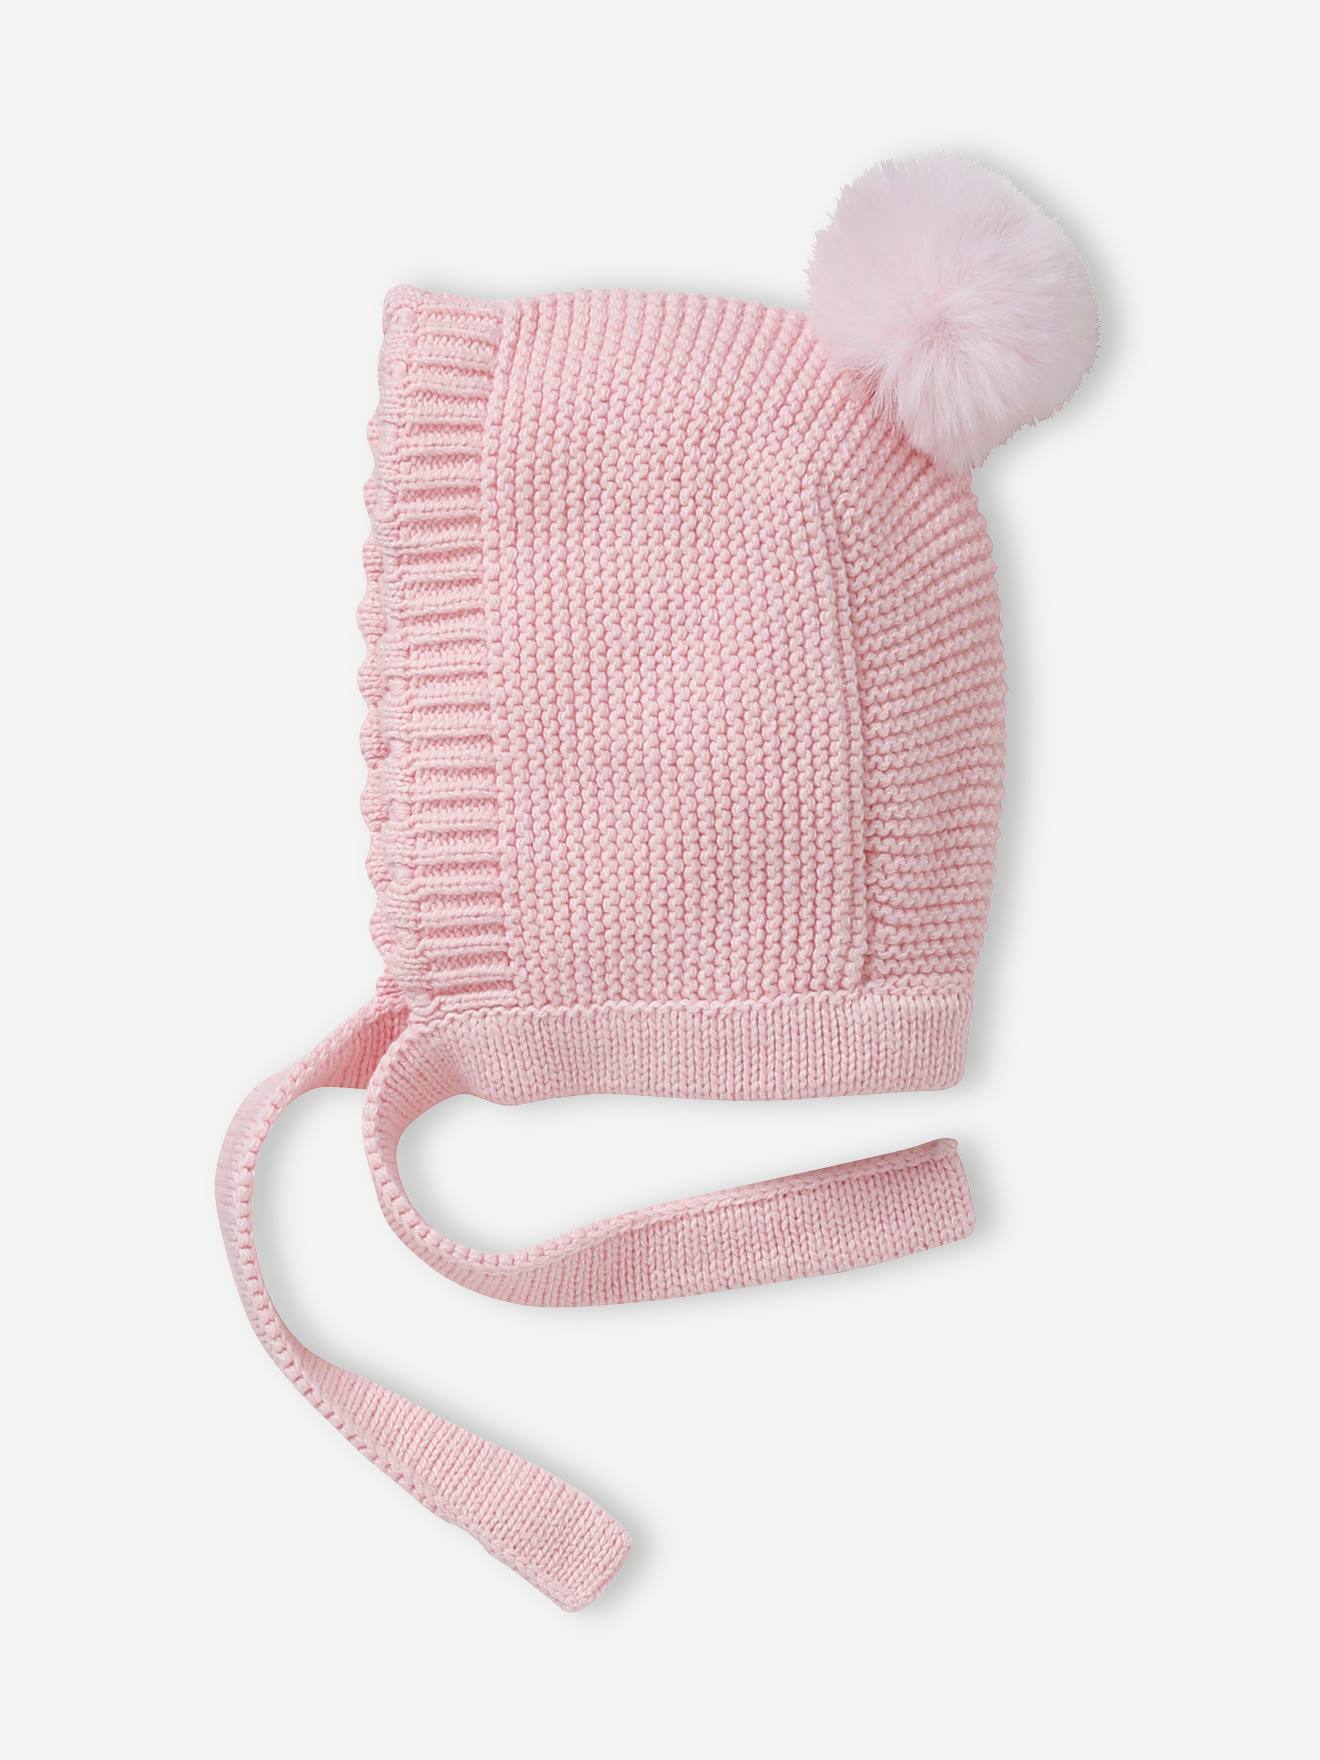 Bonnet forme capuche à pompon bébé fille rose